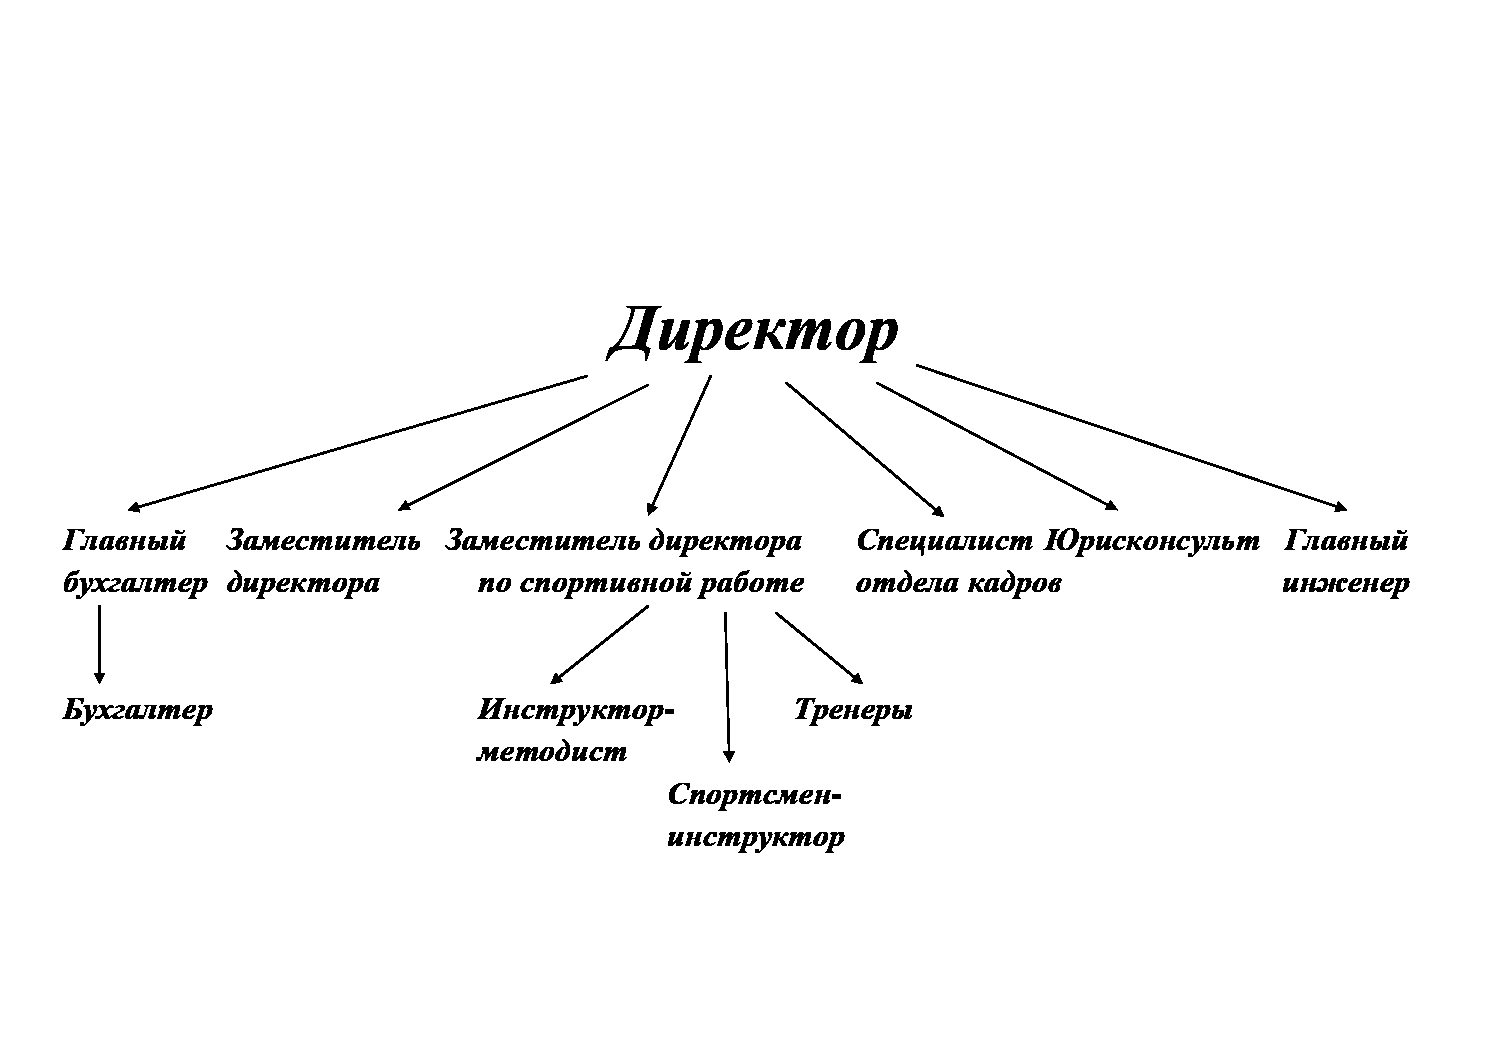 Схема структуры федерации по теннису